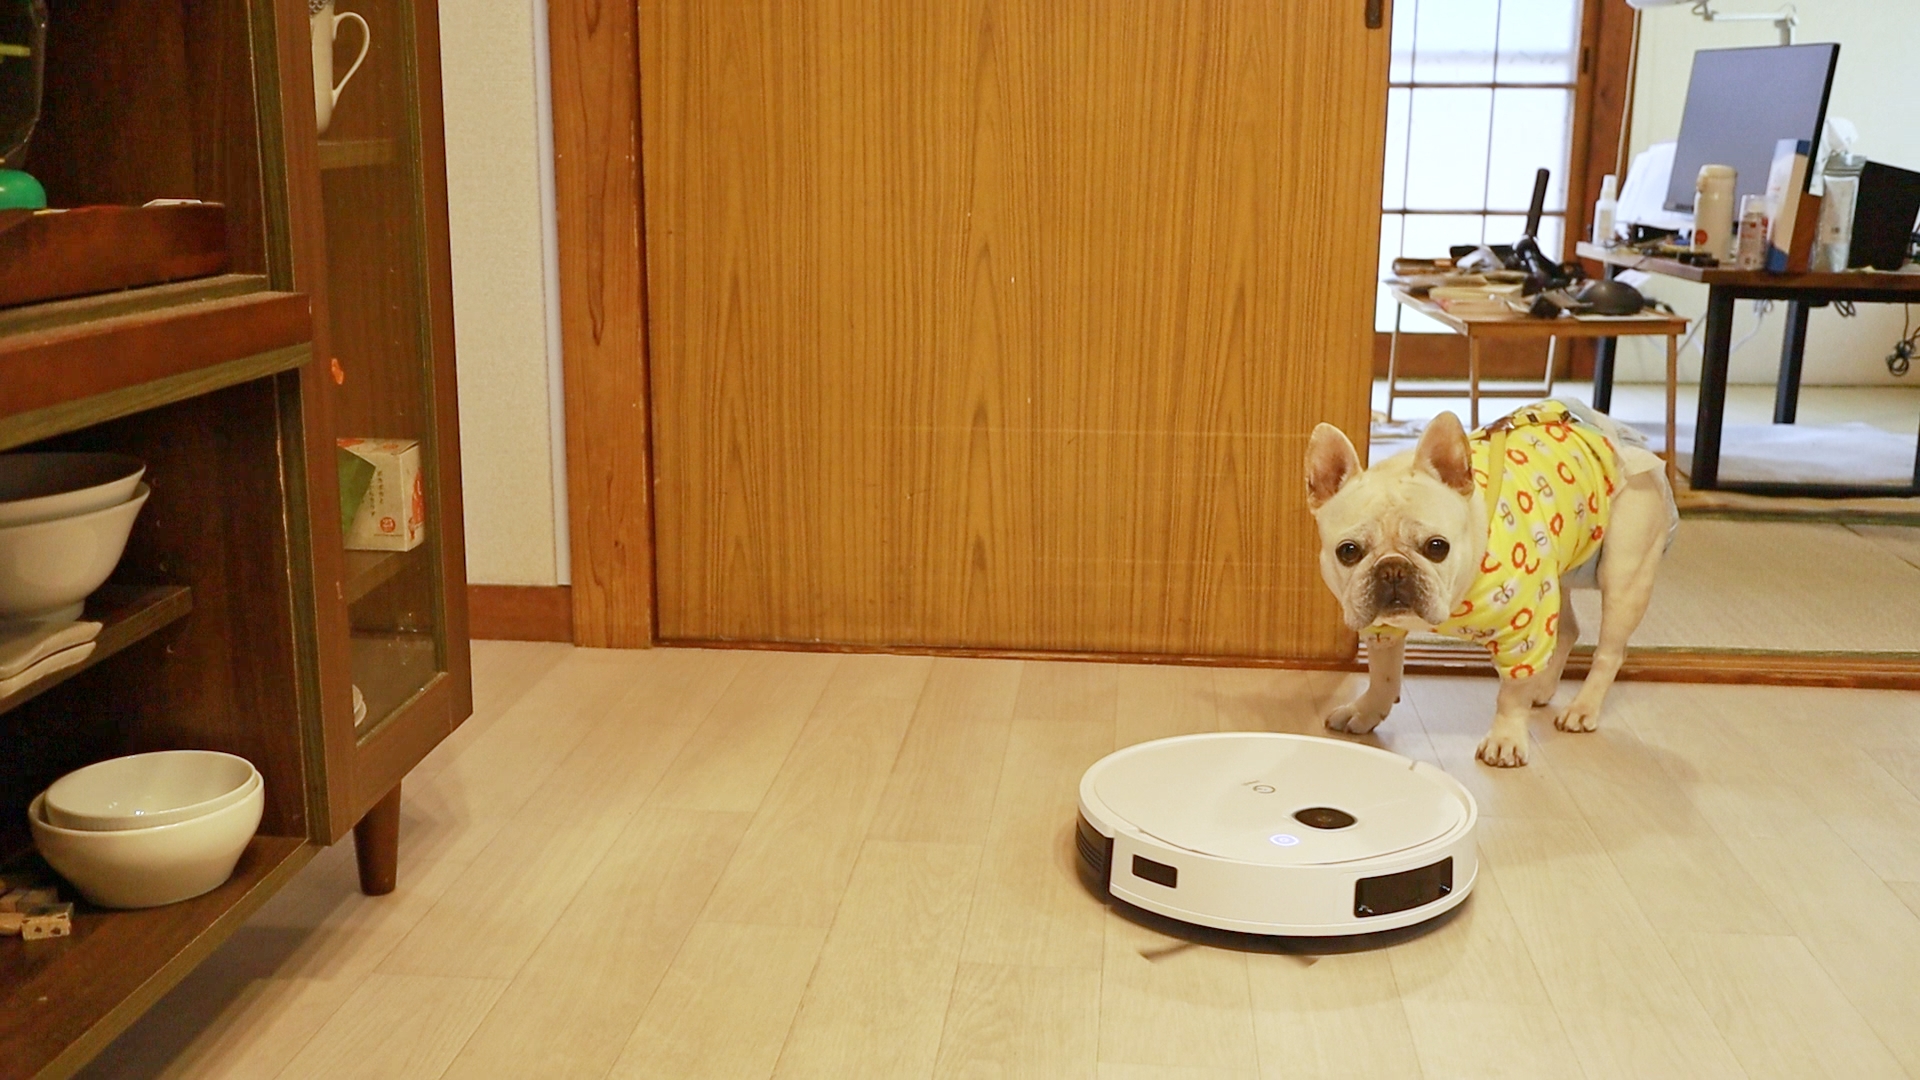 ルンバ歴5年が驚いた】水拭き兼用の最新ロボット掃除機ペットの居る家 